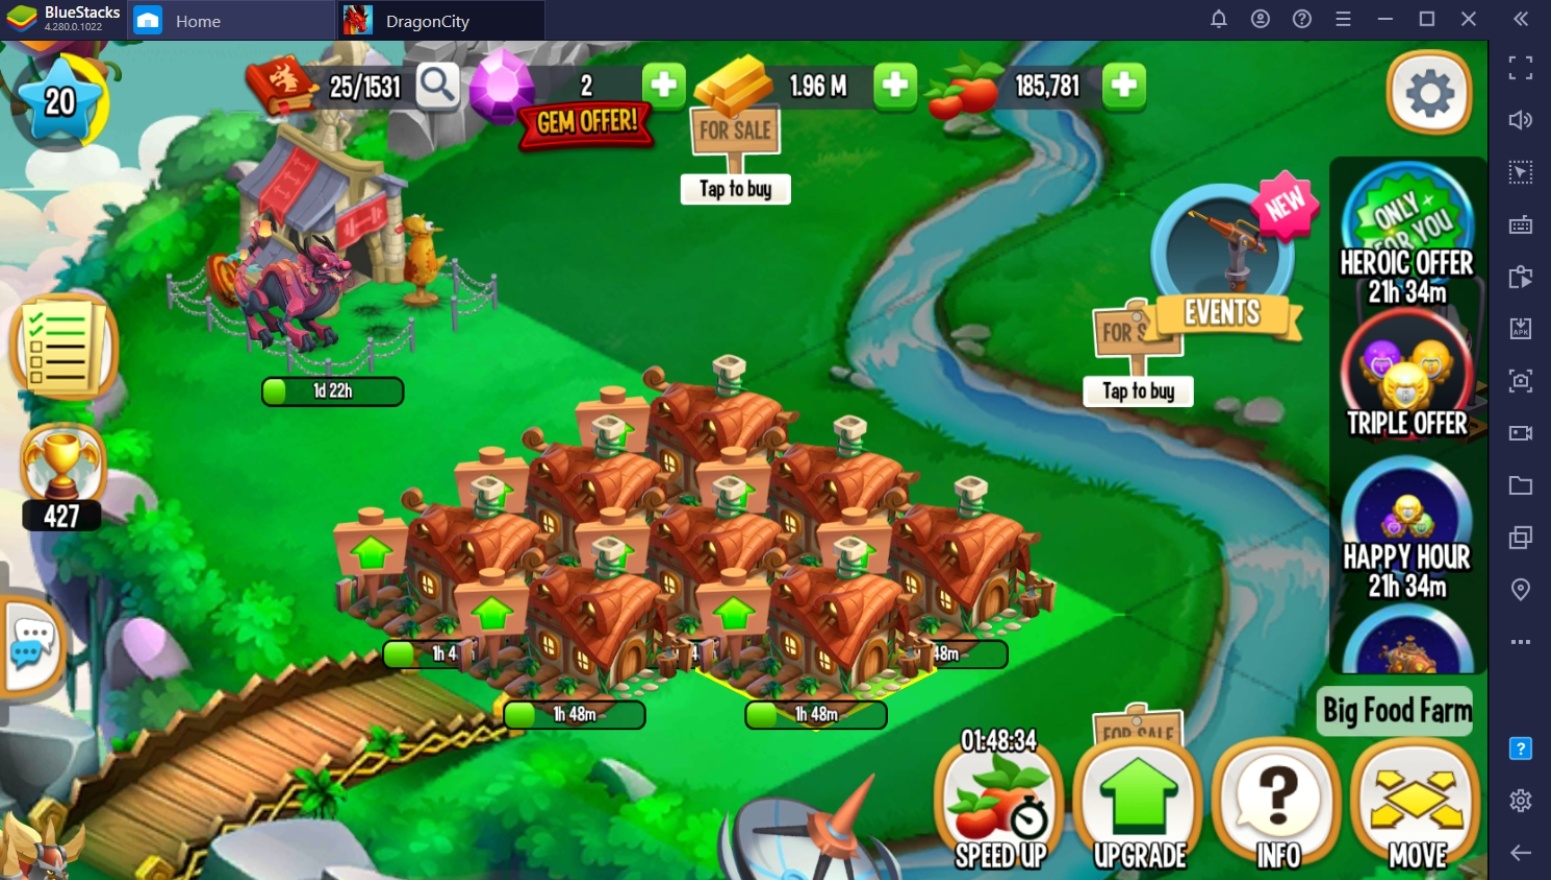 BlueStacks Anleitung zum Anbau von Lebensmitteln und Gold in Dragon City